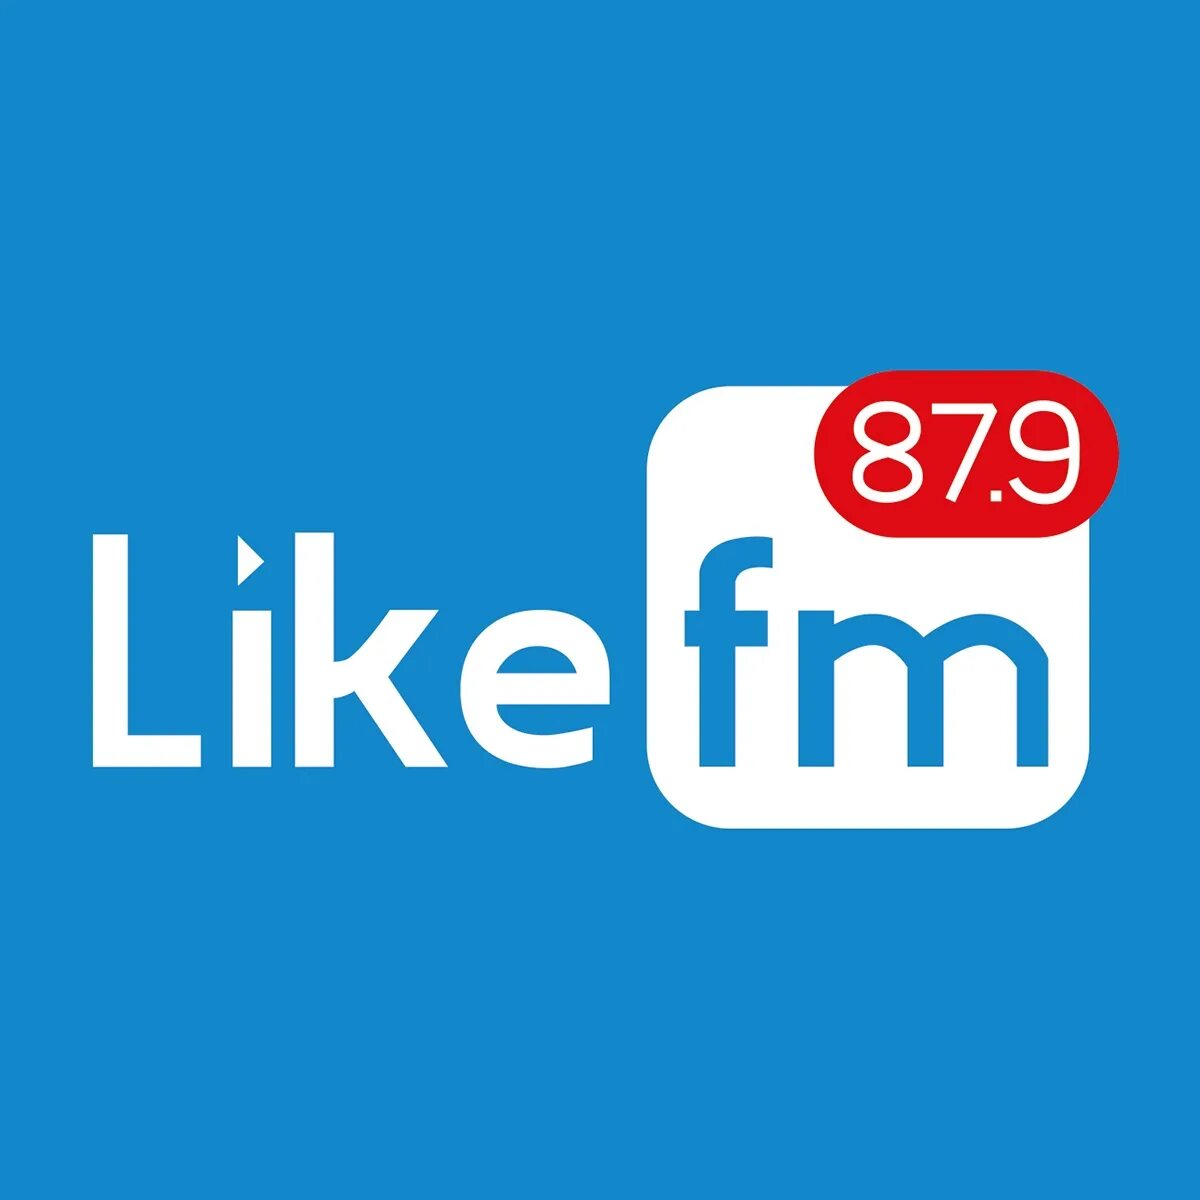 Лайк ФМ. Like fm логотип. Радиостанции лайк ФМ. Like fm 87.9. Лайк радио лучшее